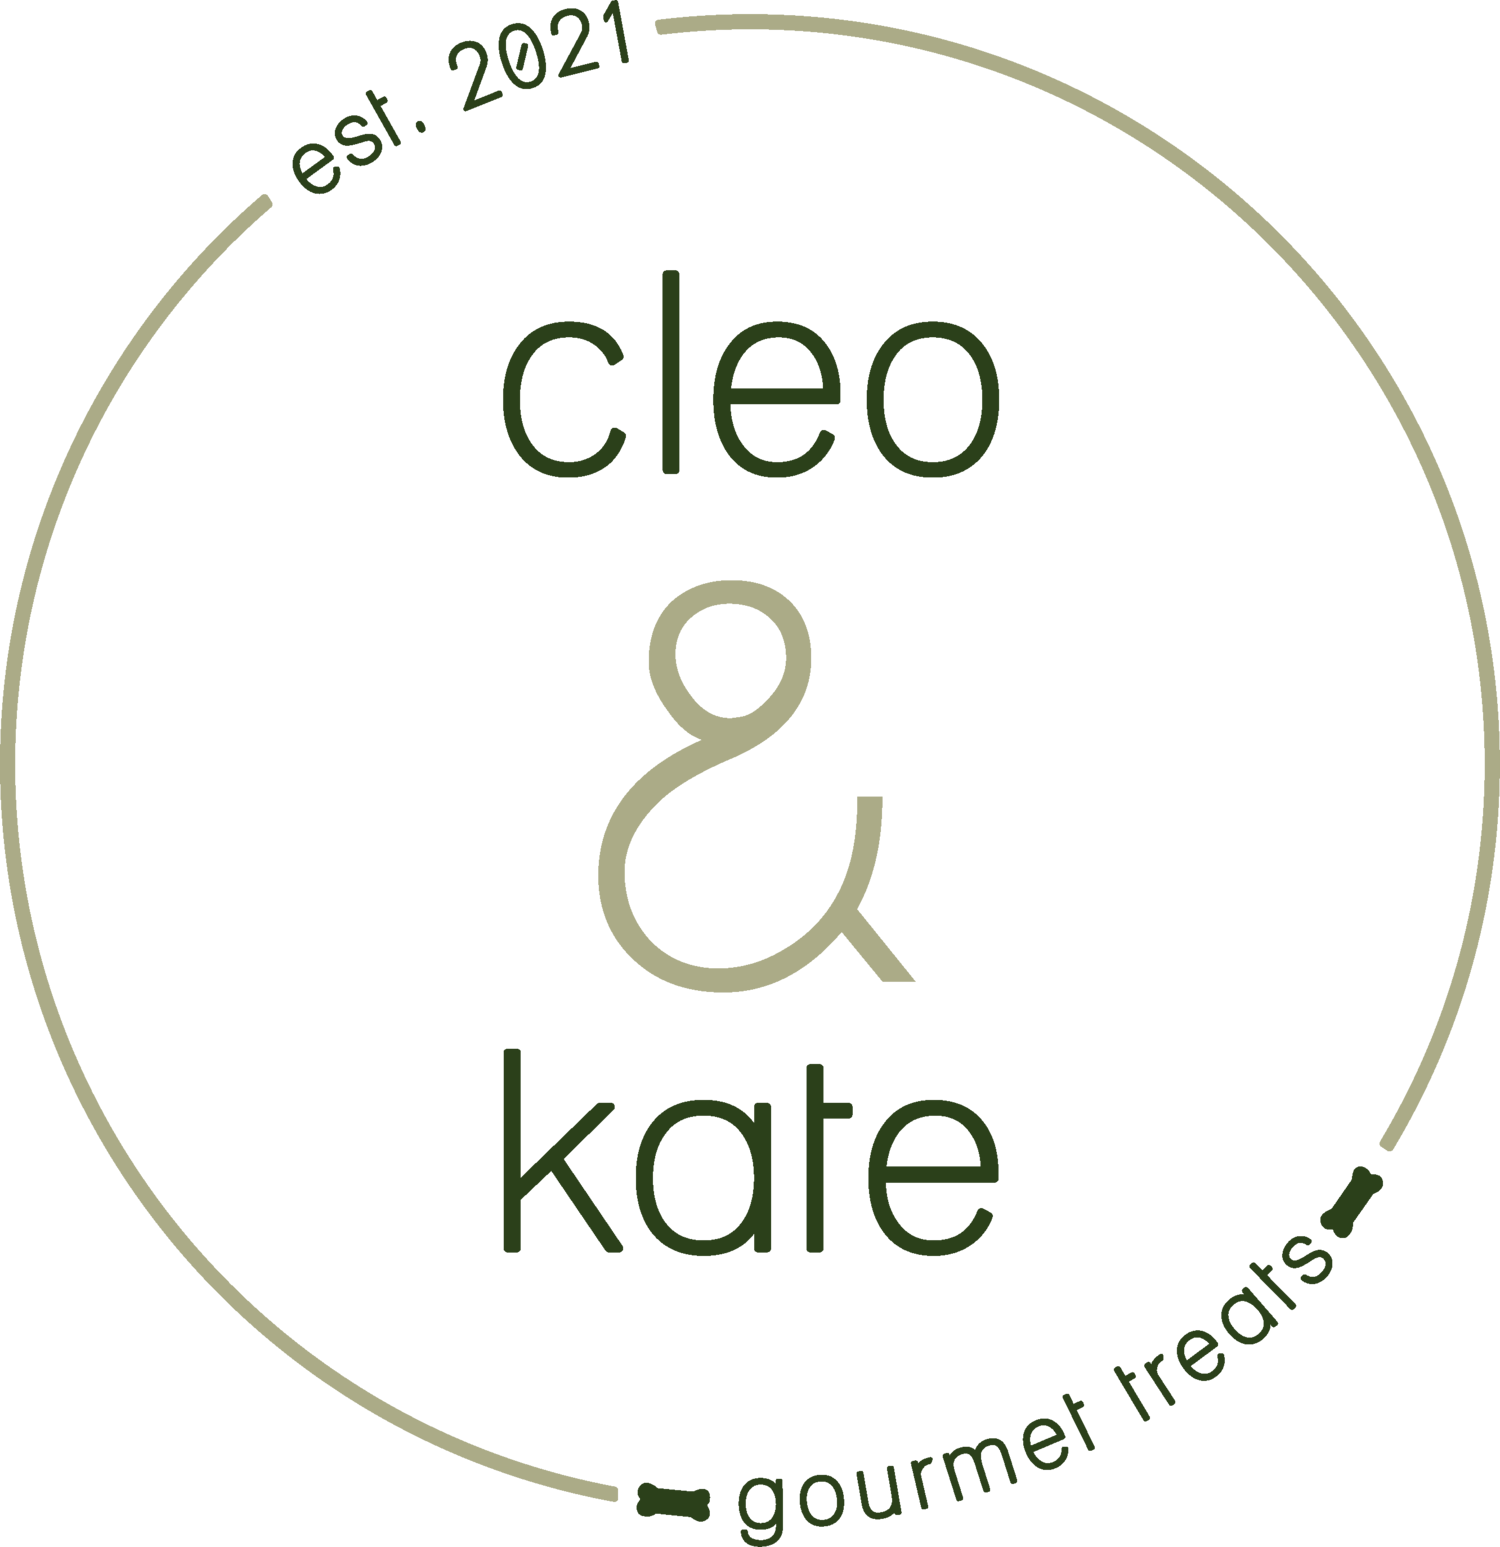 Cleo &amp; Kate